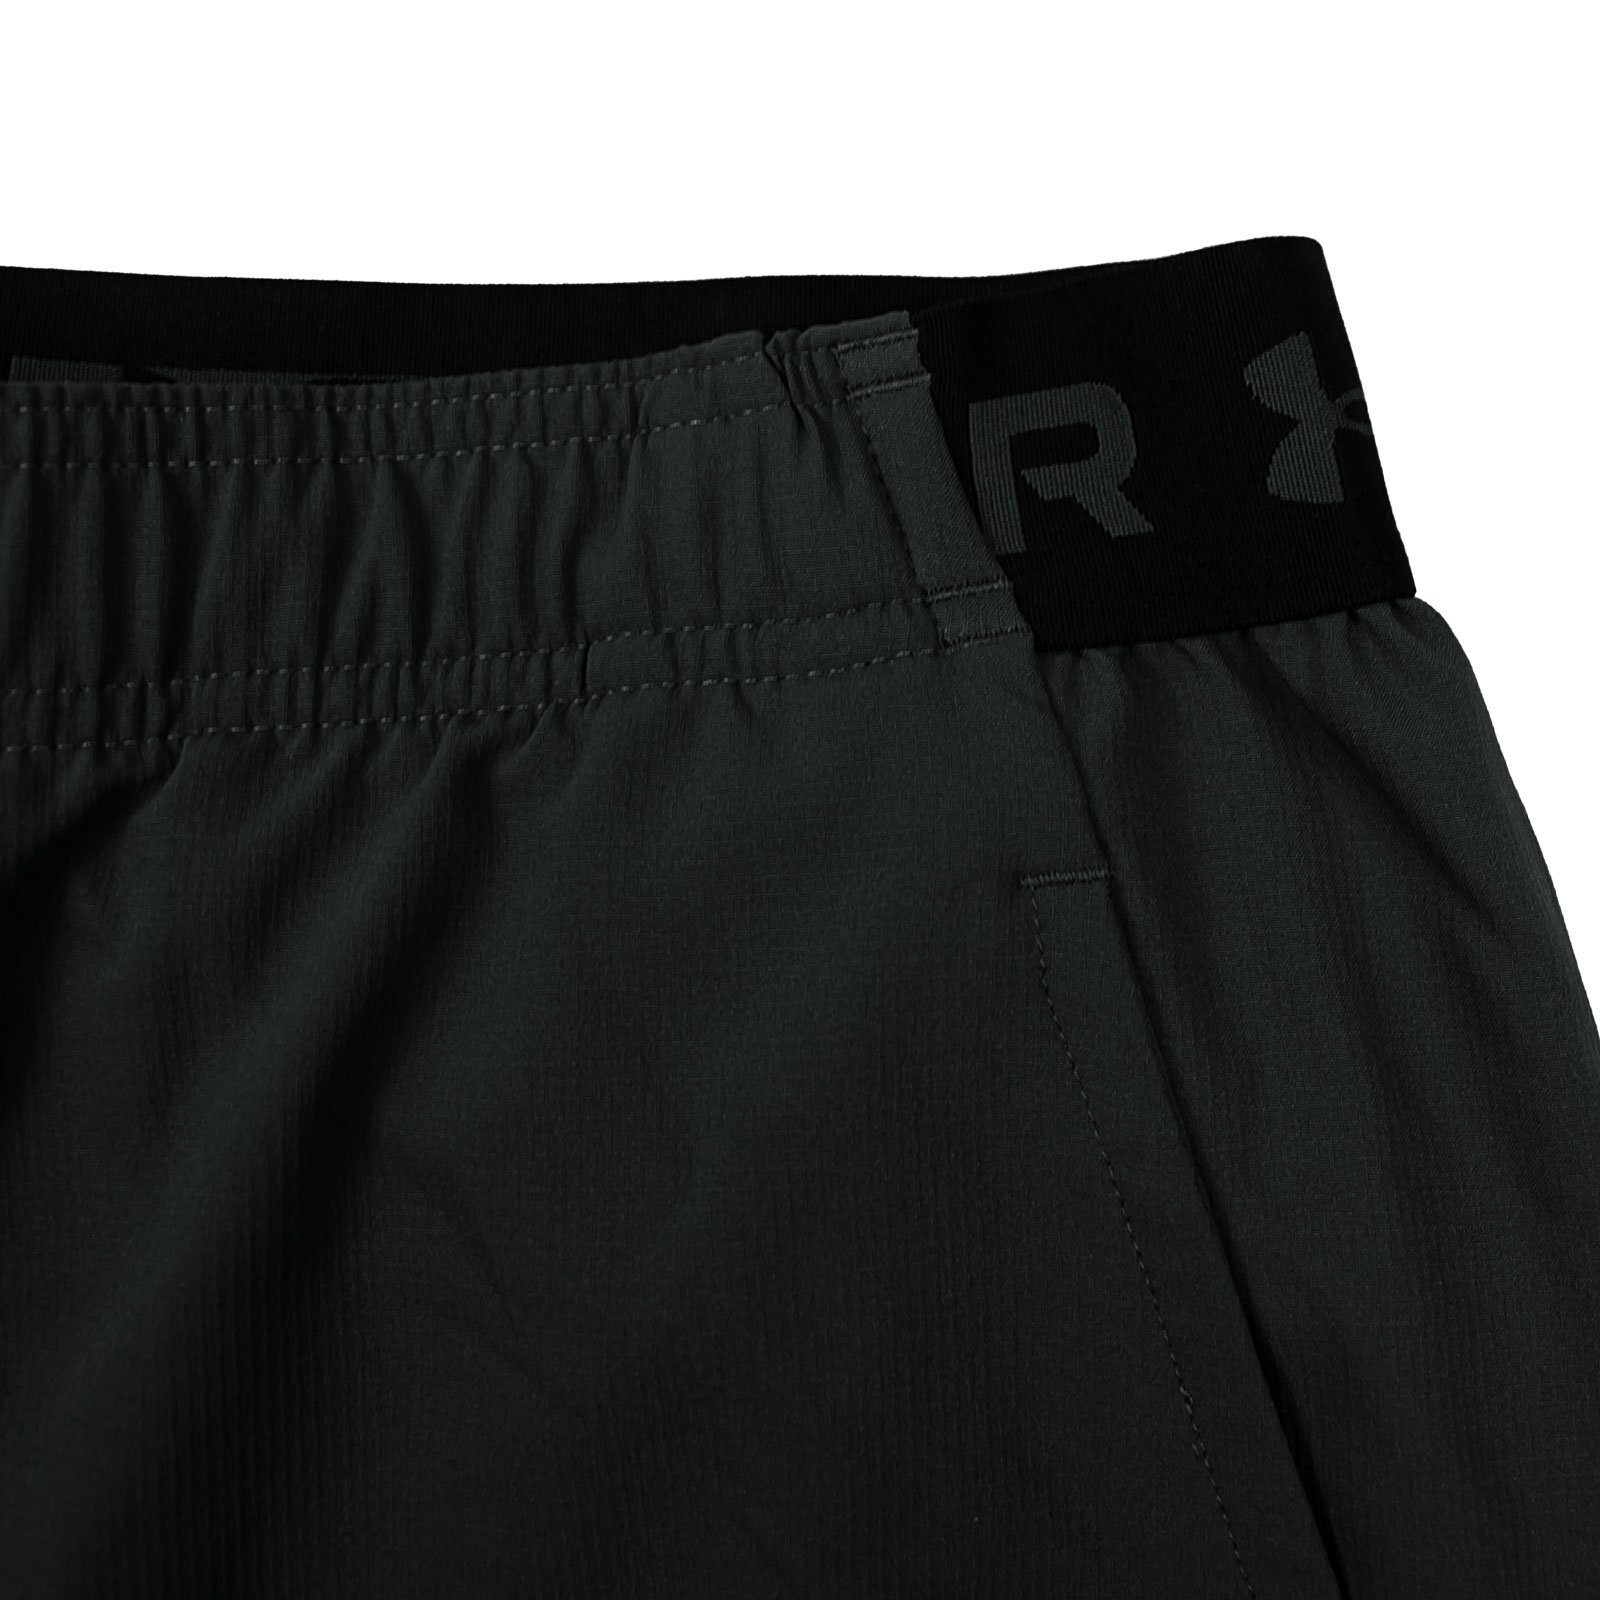 Vanish Zugband mit innenliegendem Trainingsshorts Armour® Under black gray 001 pitch Woven Shorts /